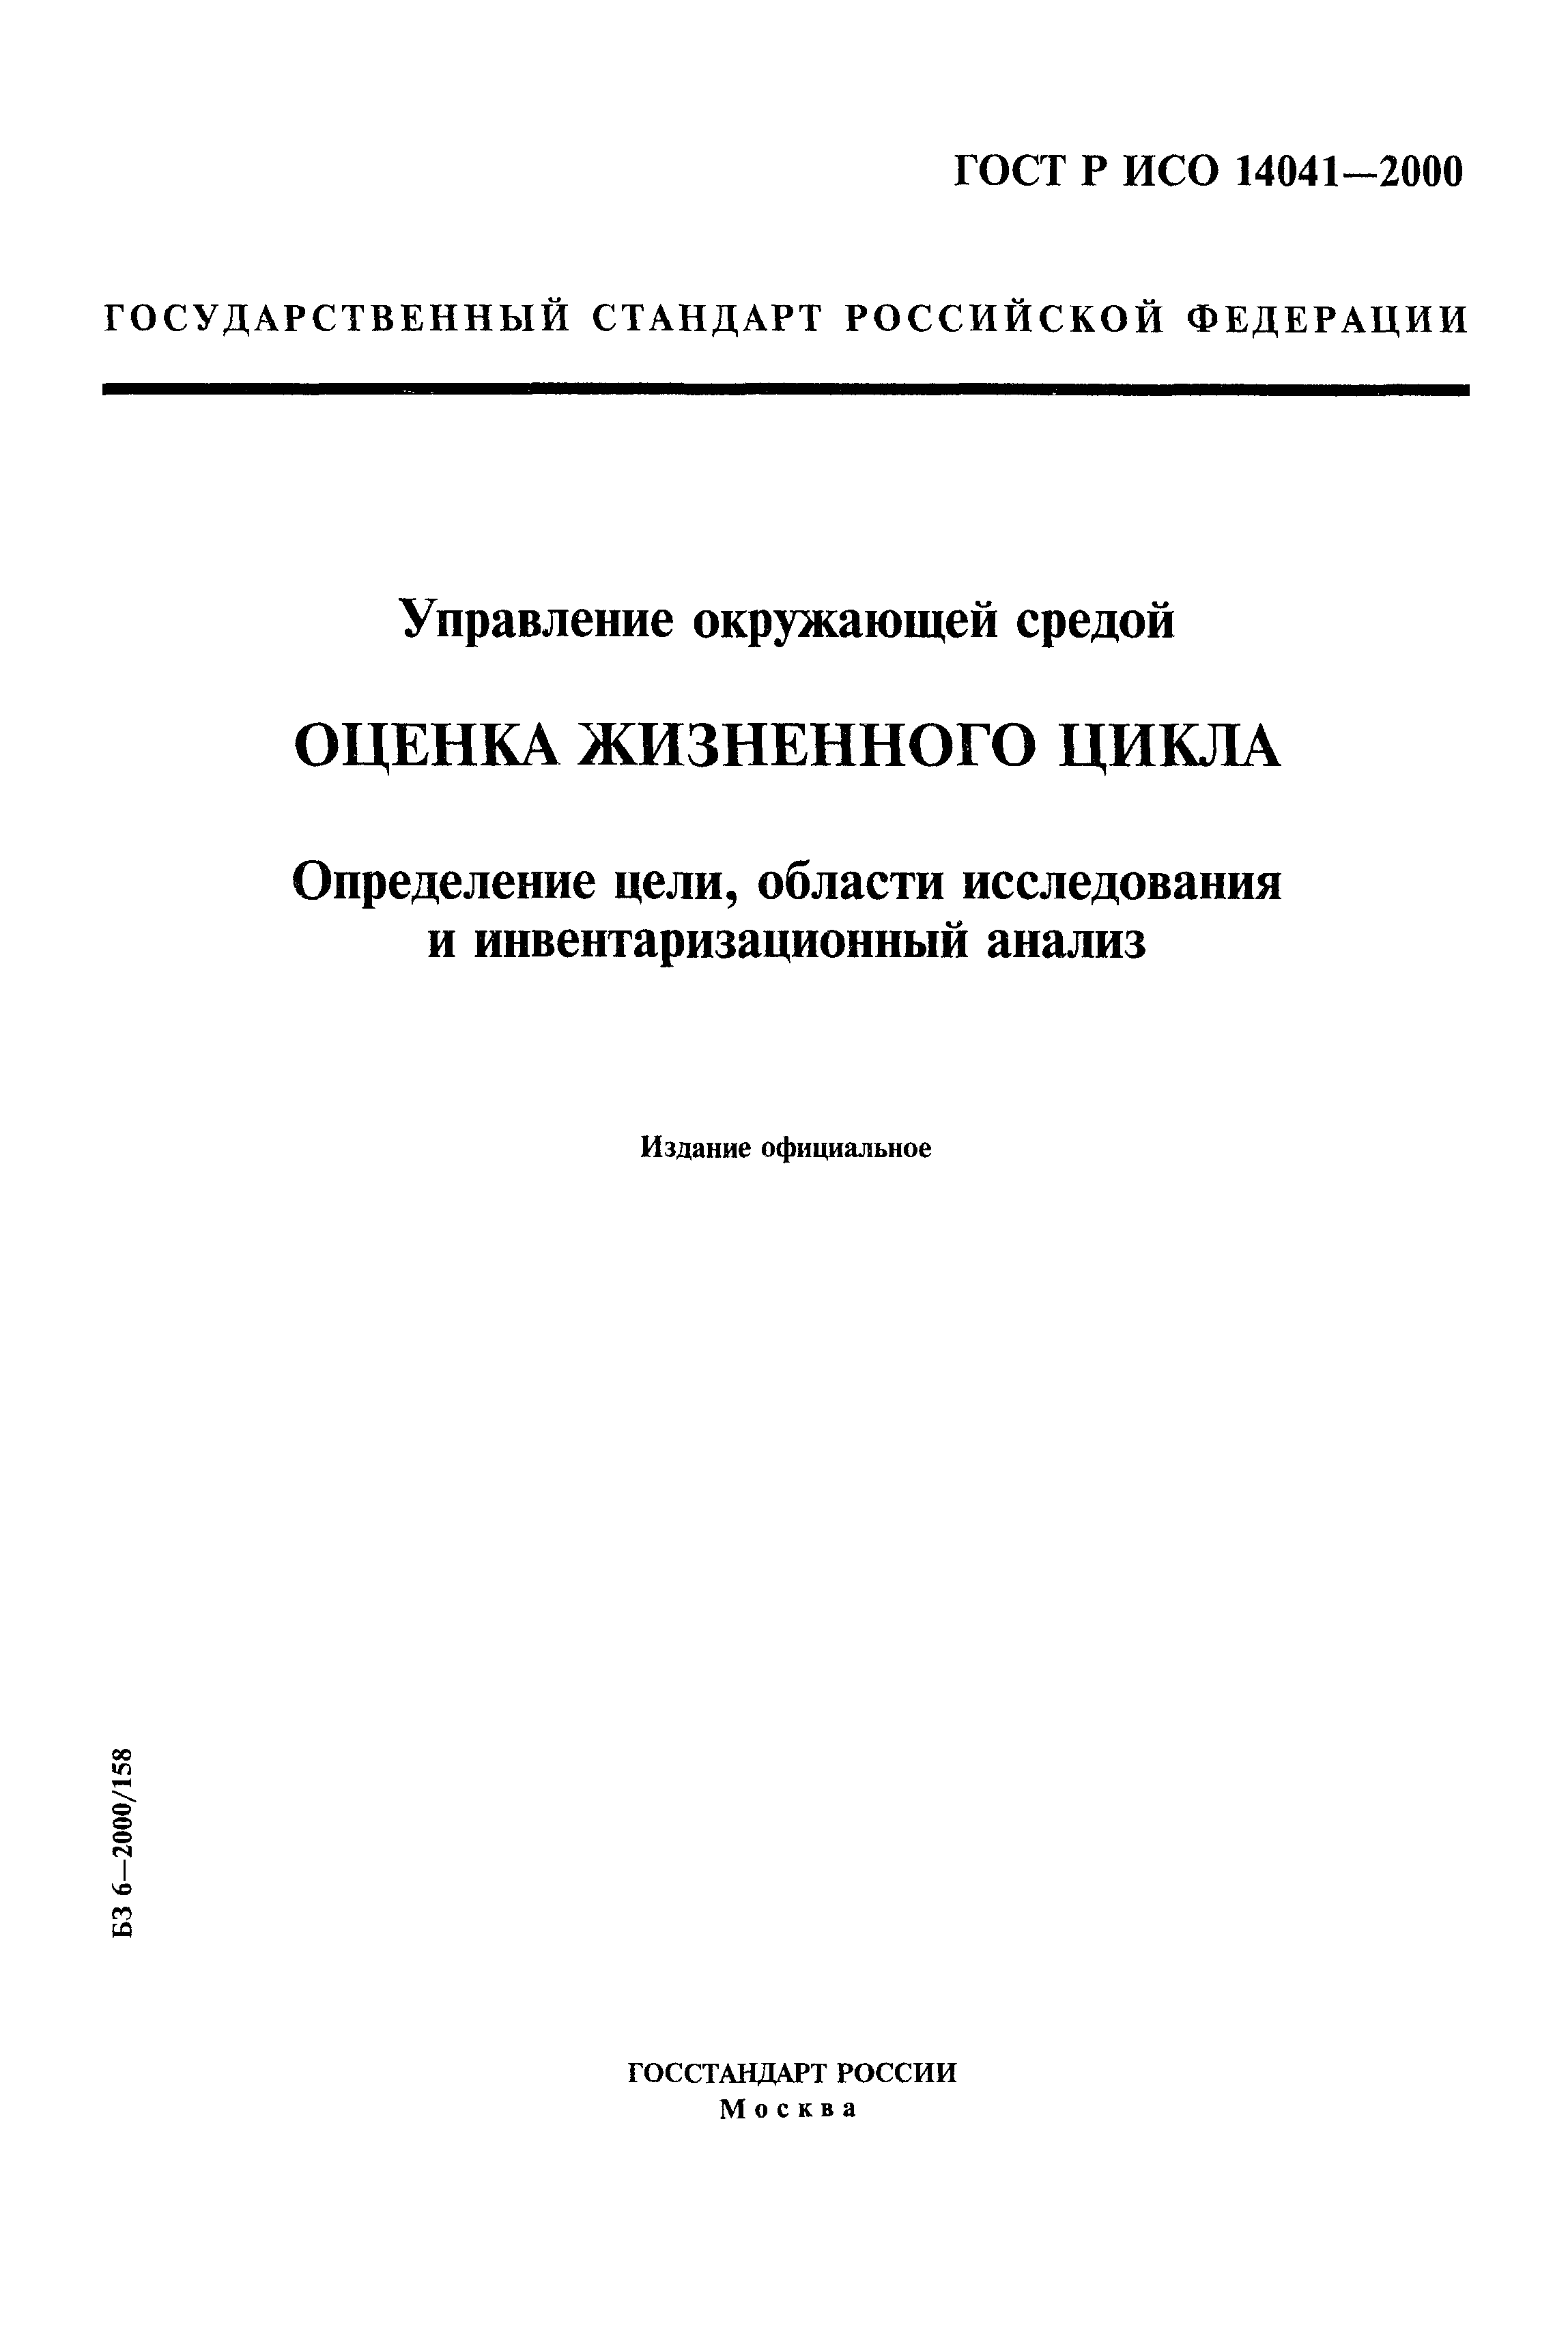 ГОСТ Р ИСО 14041-2000